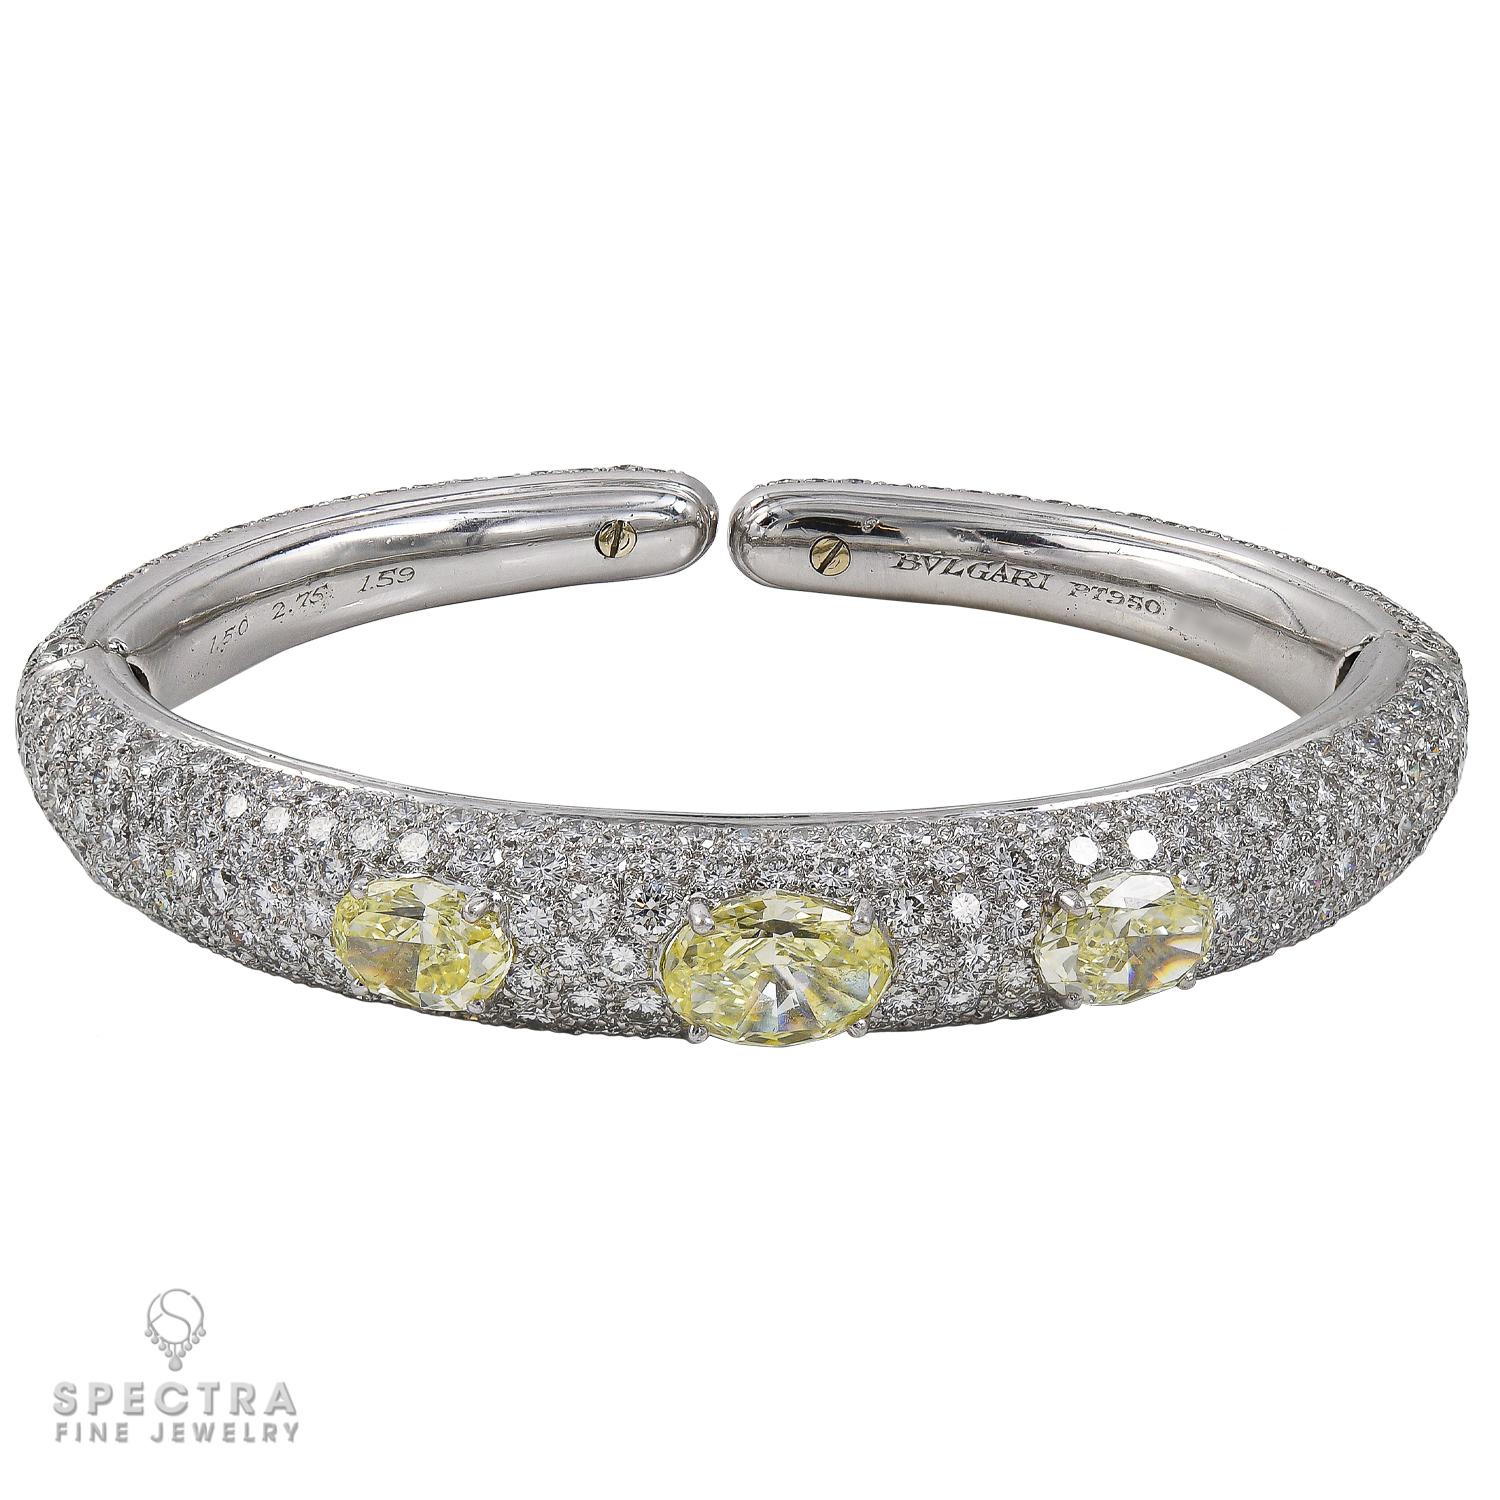 Ce bracelet à pavé de diamants jaunes Bulgari, fabriqué en Italie, est un splendide bracelet à double charnière de style bombé. La forme bombée est agréablement arrondie, lyrique et typiquement féminine. La surface incurvée met en valeur la beauté